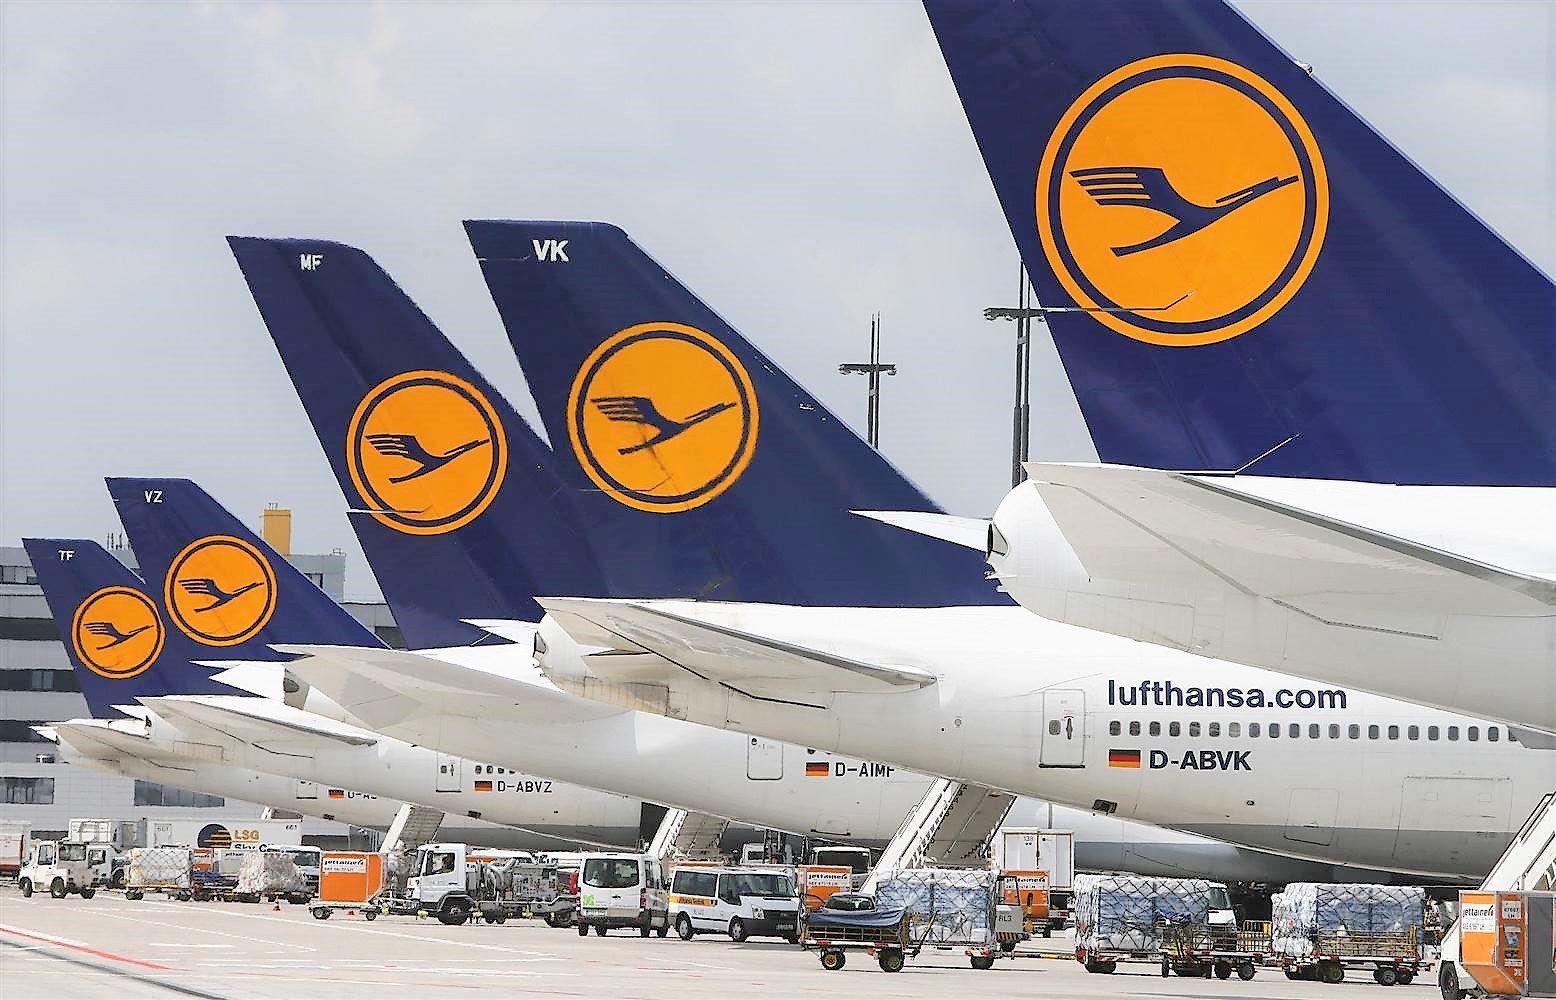 Panik auf dem Flughafen Frankfurt- Passagiere mussten Maschine der Lufthansa sofort verlassen!